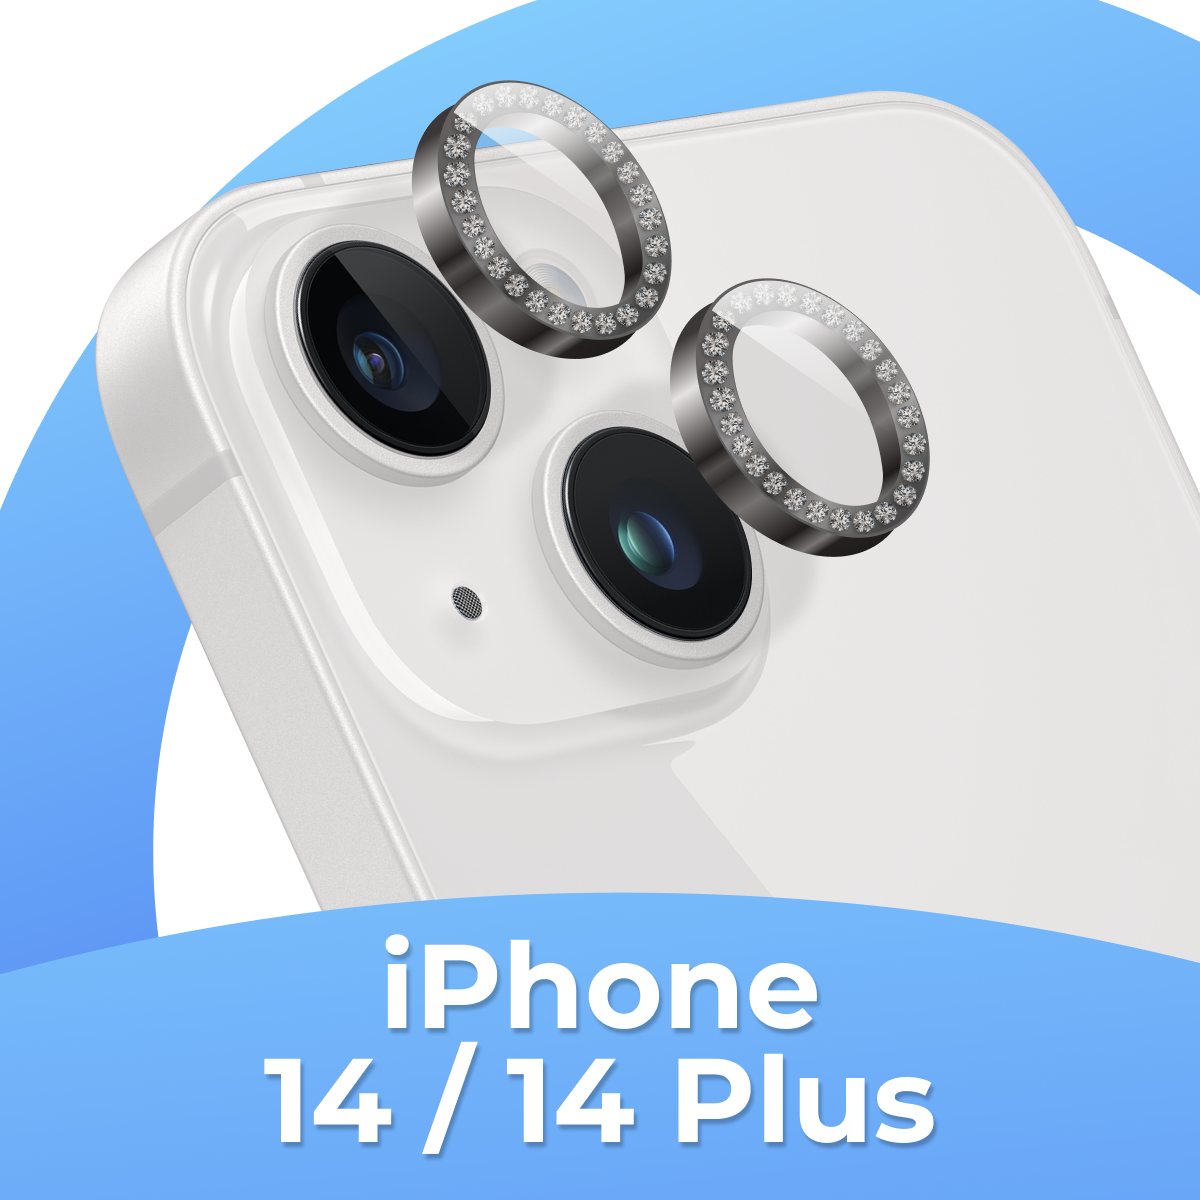 Комплект защитных стекол для камеры Apple iPhone 14 и 14 Plus / Противоударные линзы на камеру Эпл Айфон 14 и 14 Плюс со стразами / Серебристый